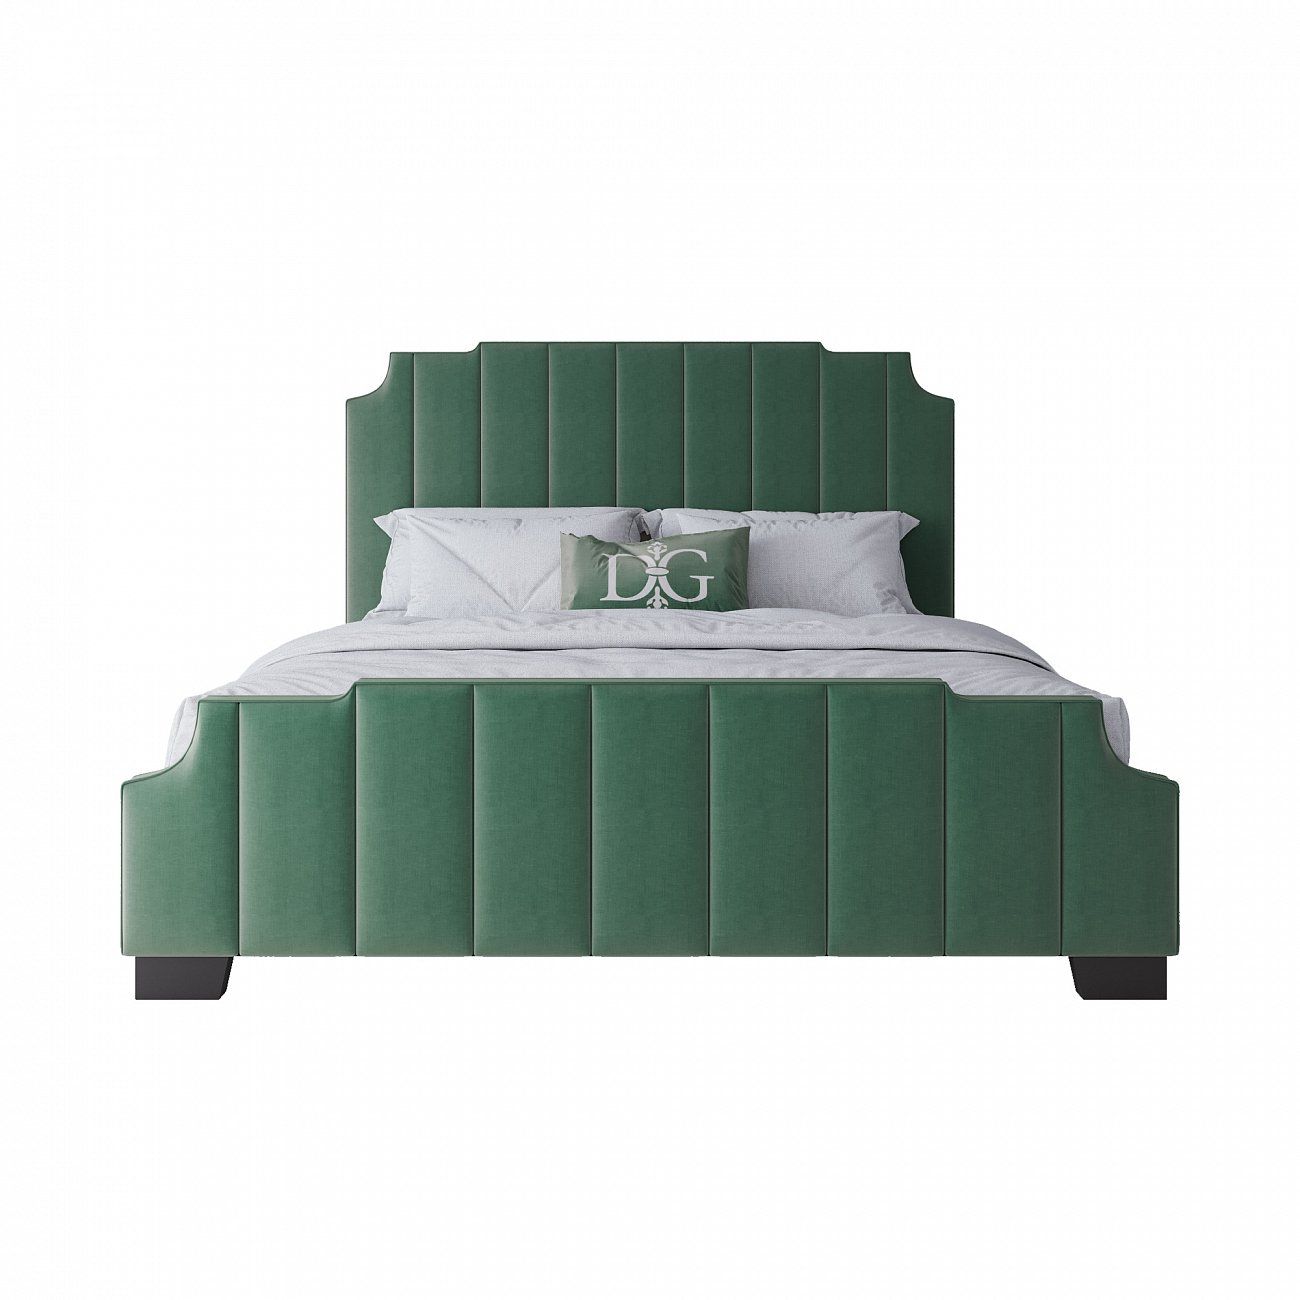 Кровать двуспальная 180х200 см зеленая Bony